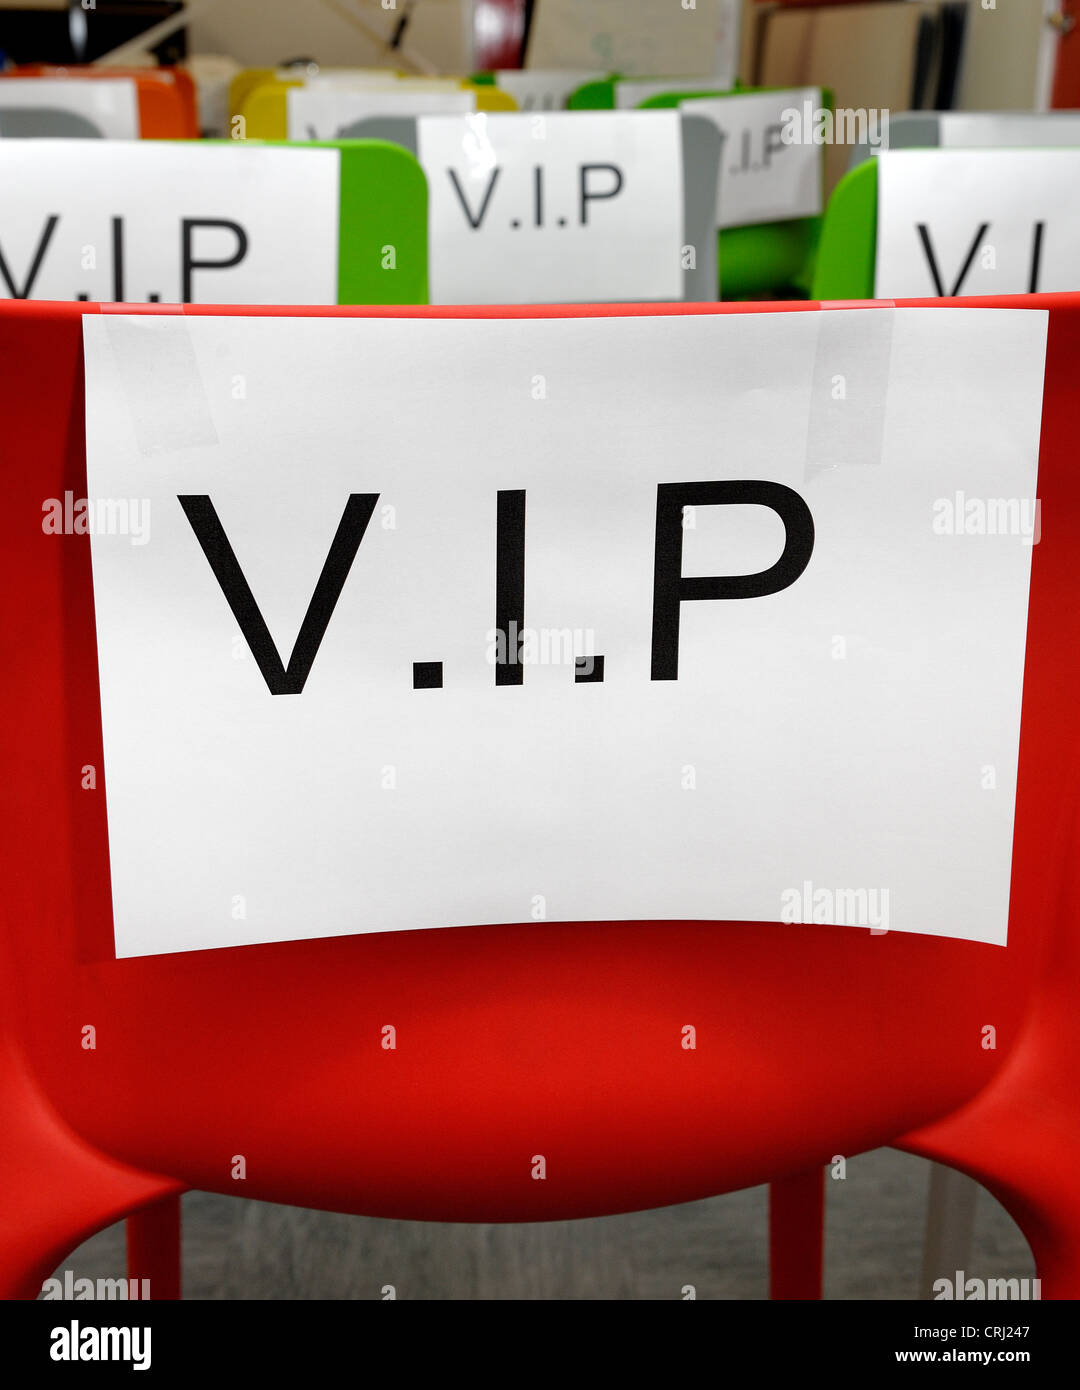 Los asientos en color etiquetada V.I.P. Foto de stock